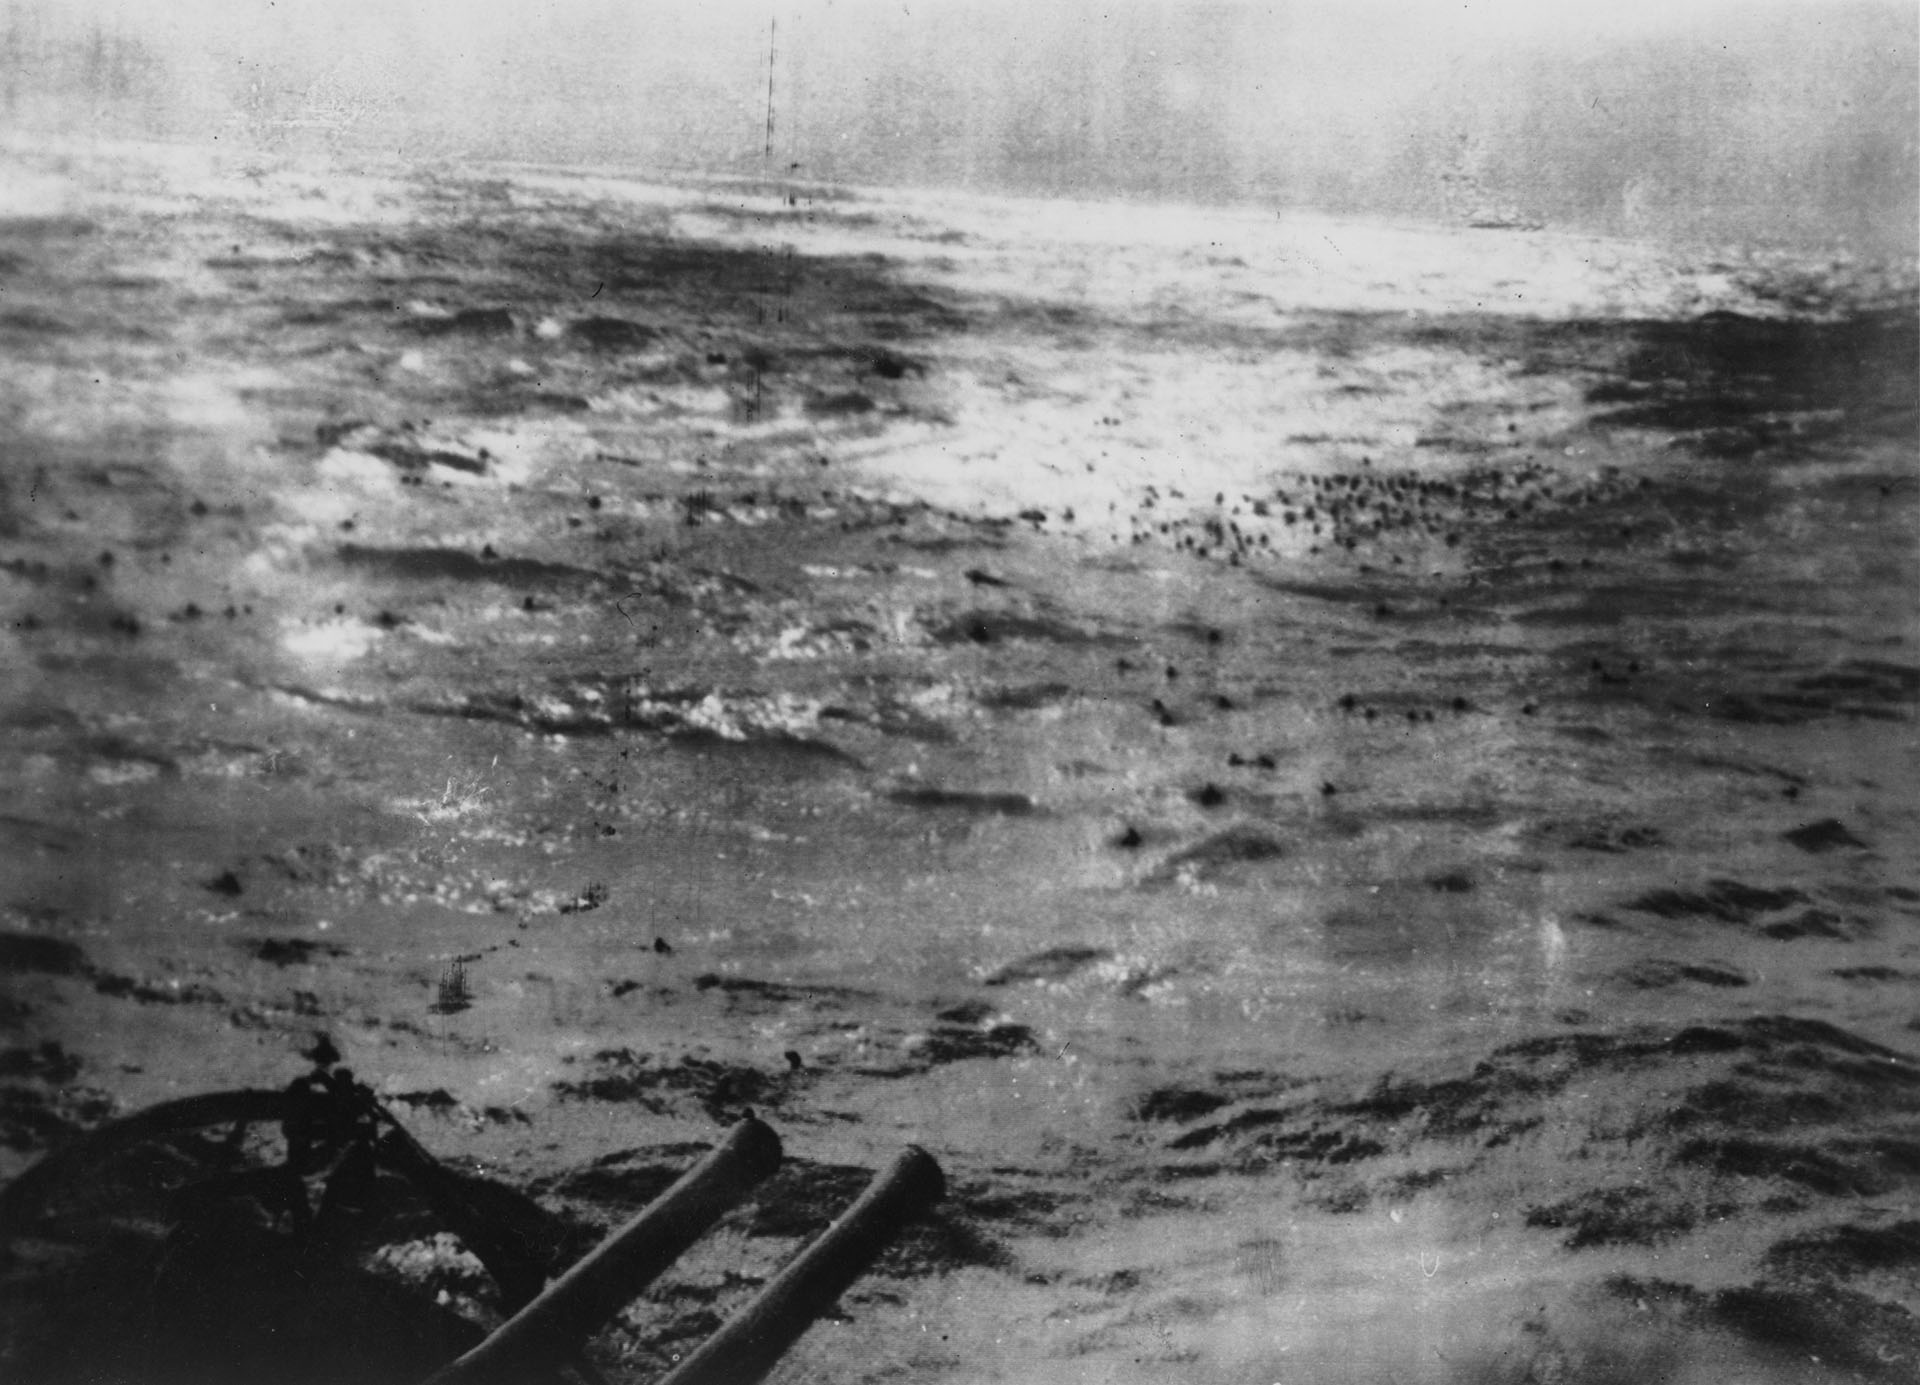 El día que España intentó rescatar al acorazado nazi «Bismarck» YJCUIM2AUJHI3CFWW4N3DPNLTY